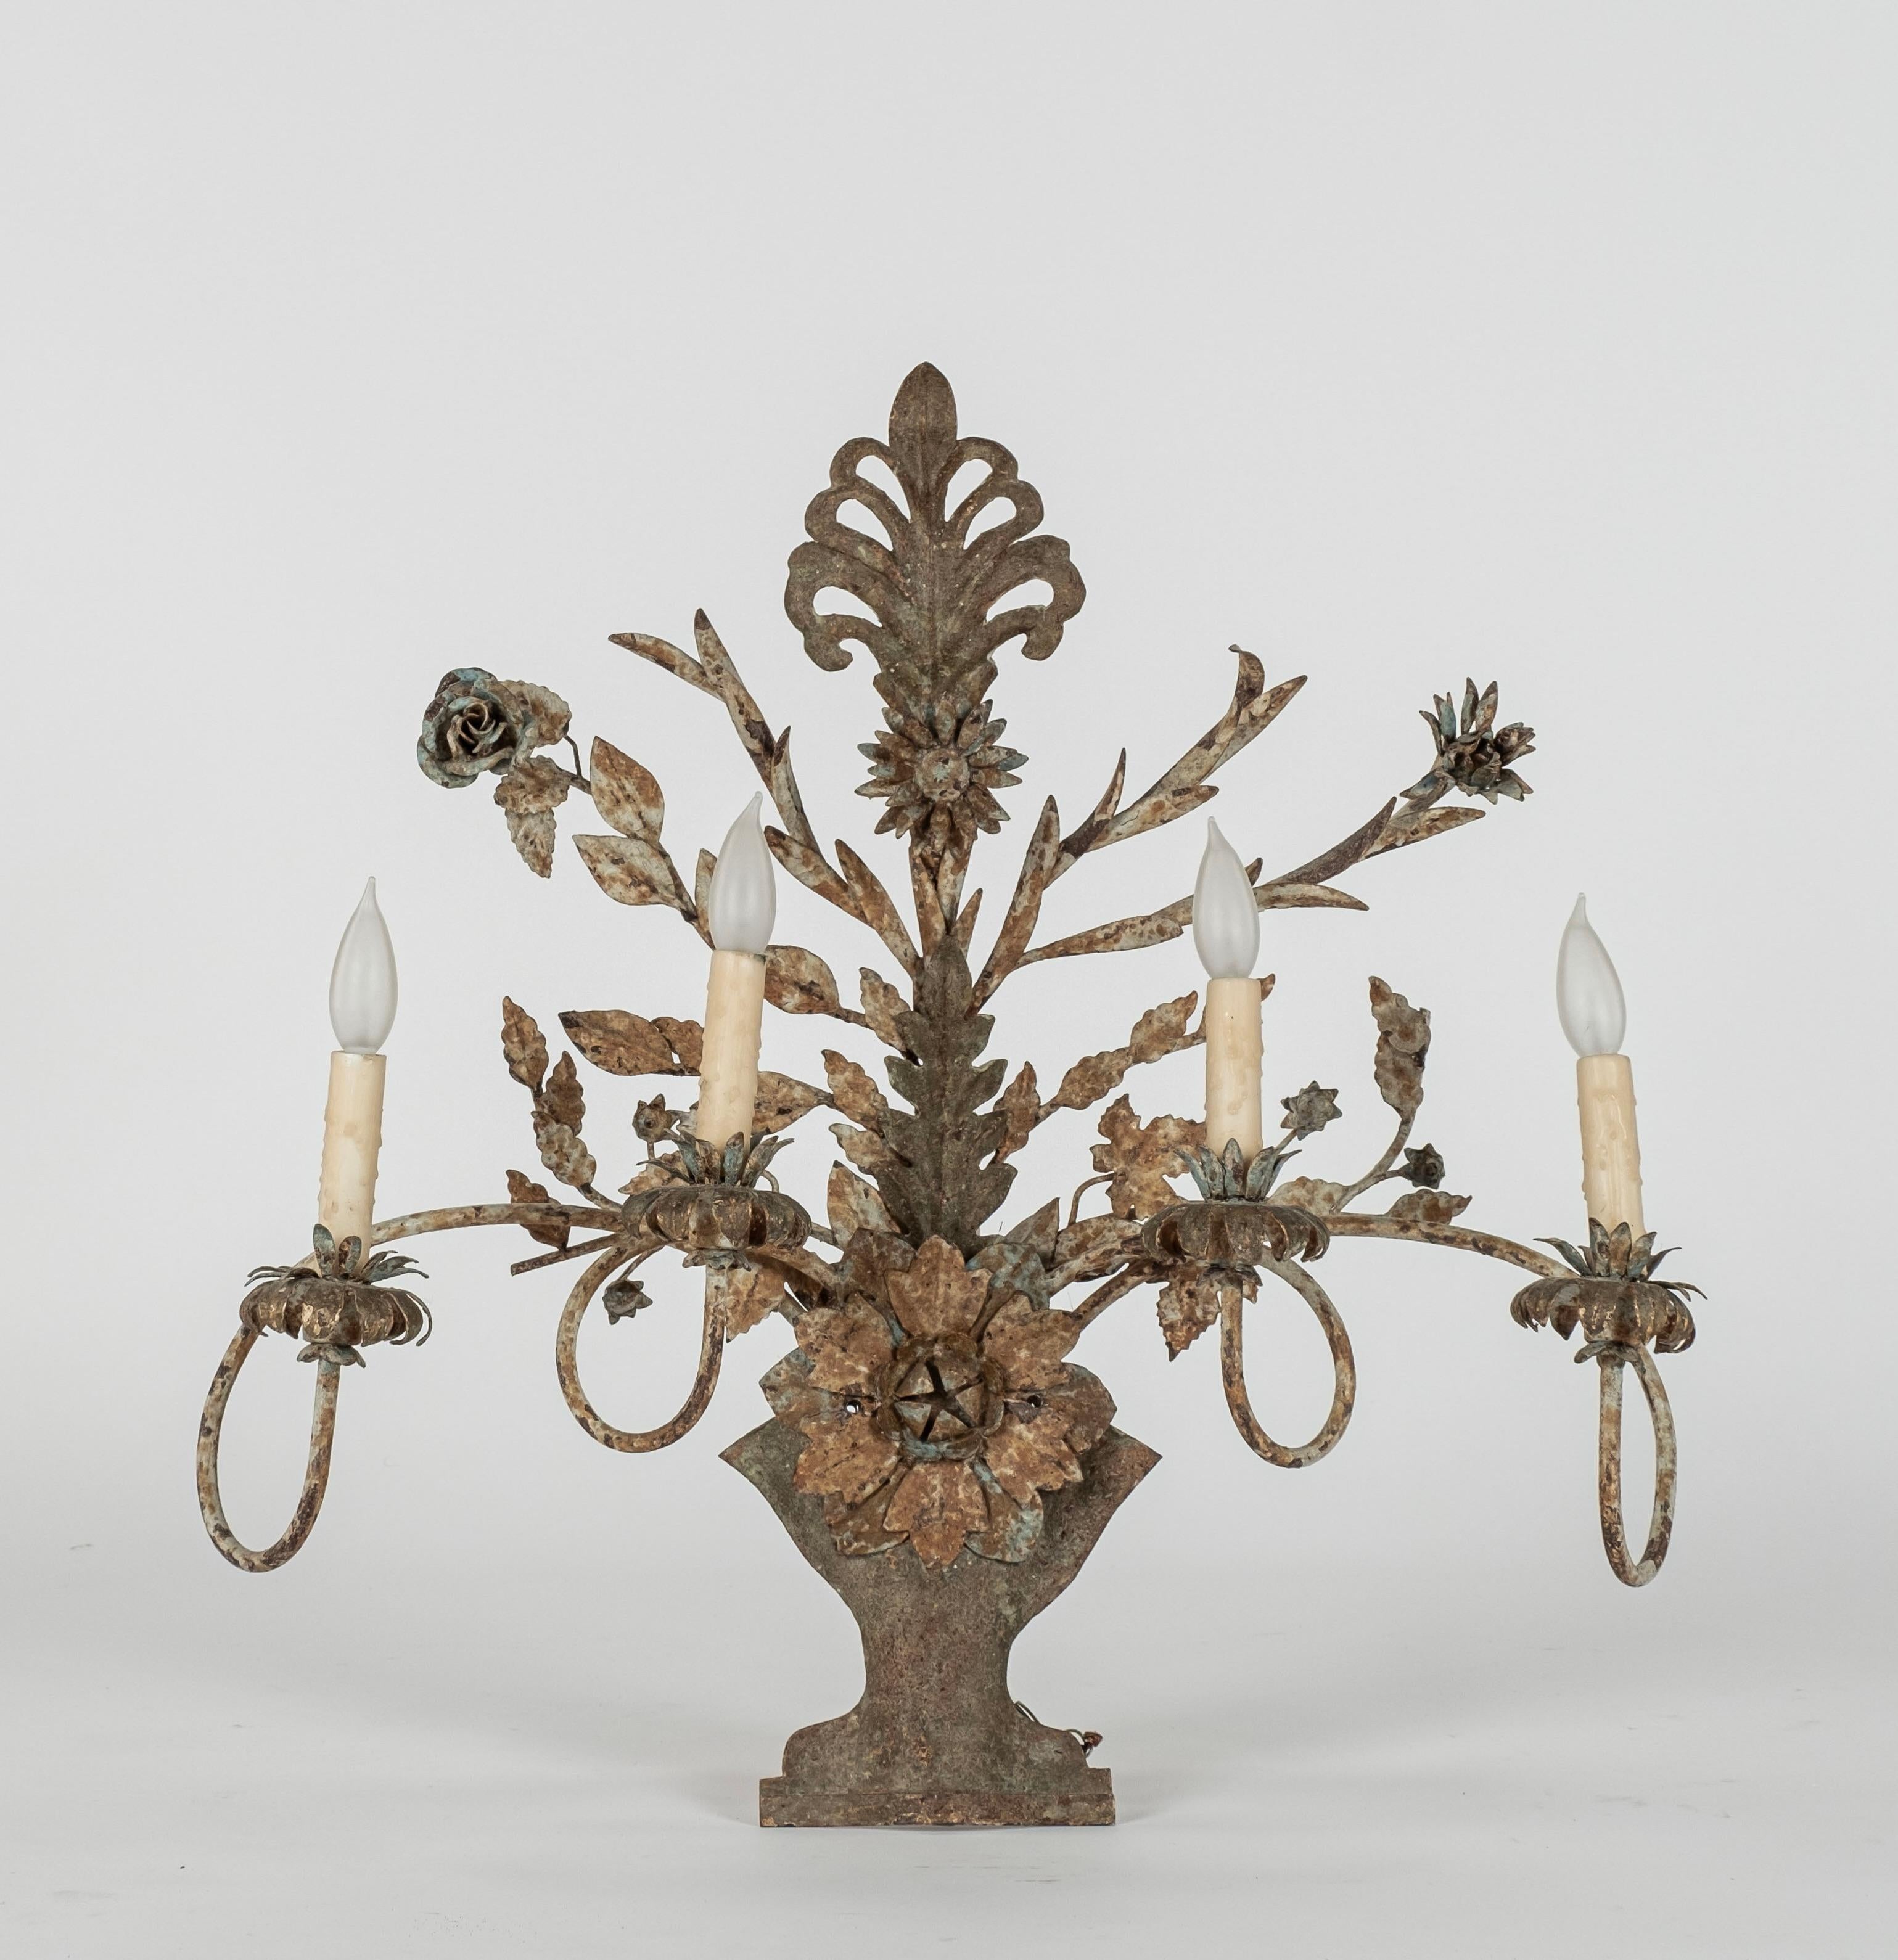 Geformte und geschliffene Metallspots mit je 4 Lichtern.  Das Design besteht aus einer Urne mit Blumen und Blättern.  